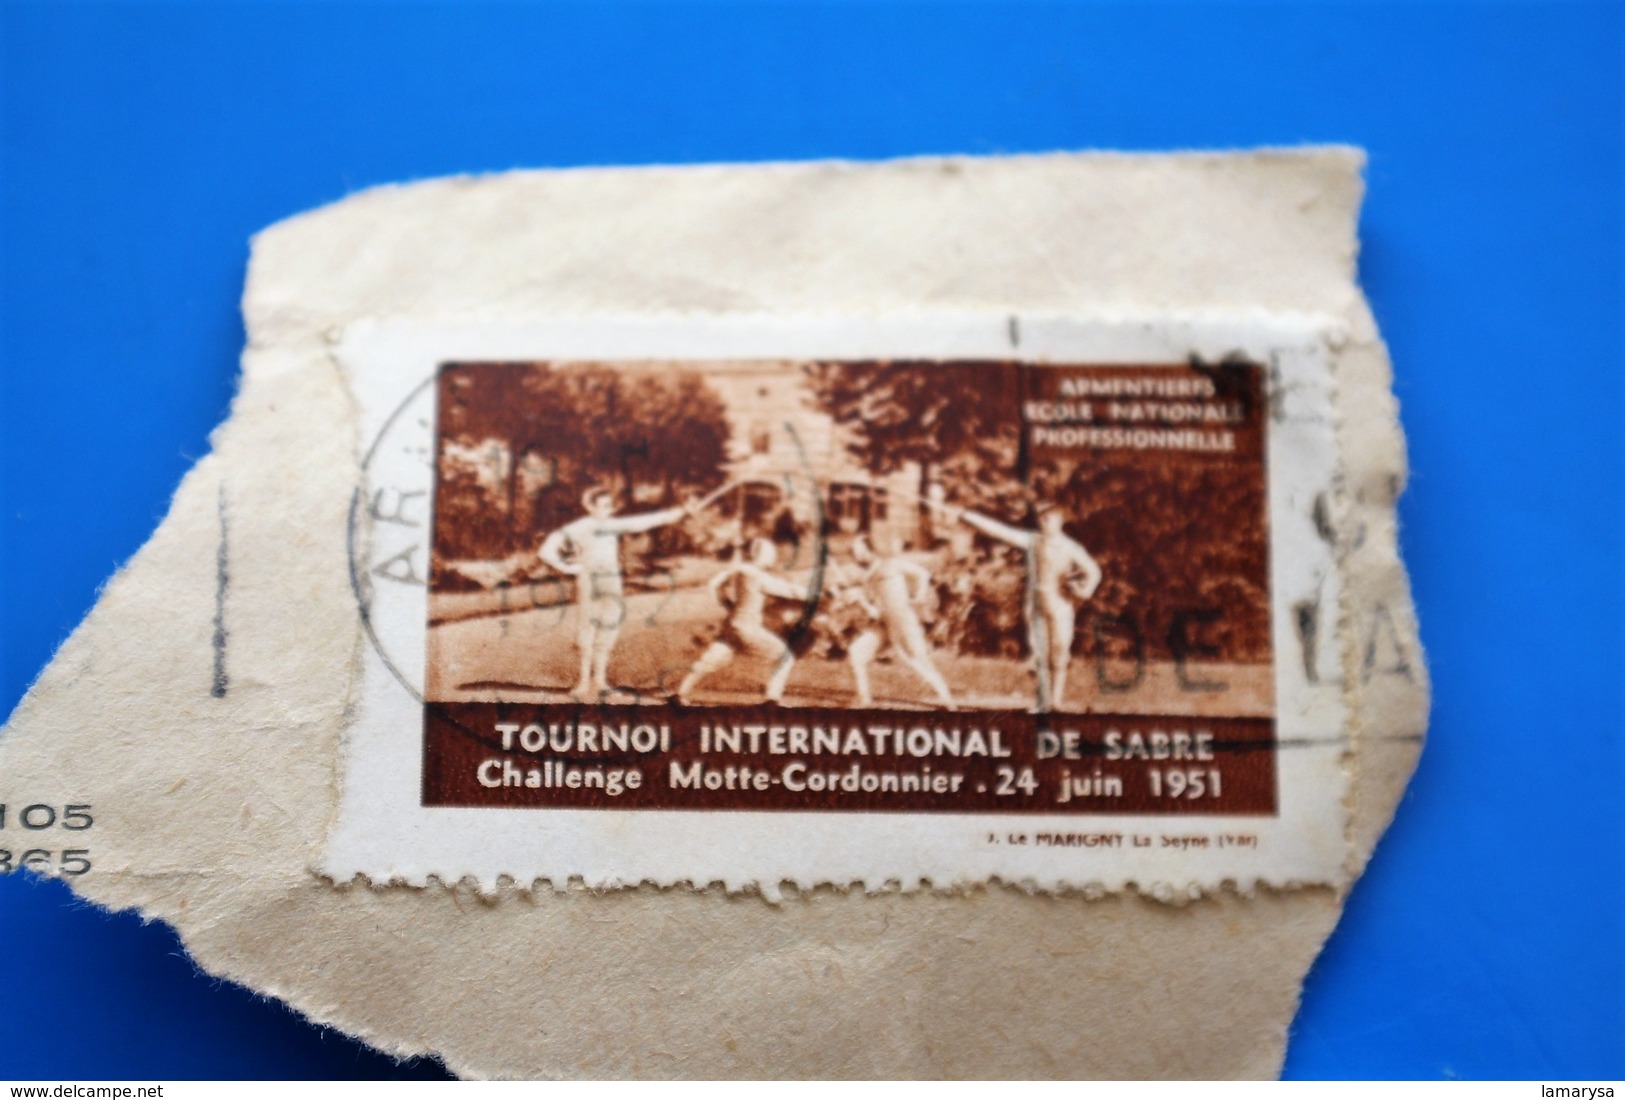 ARMENTIÈRES 1951 TOURNOI INTERNATIONAL DE SABRE CHALLE MAÎTRE CORDONNIER Vignette-Erinnophilie,Timbre,stamp,Bollo-Viñeta - Sport